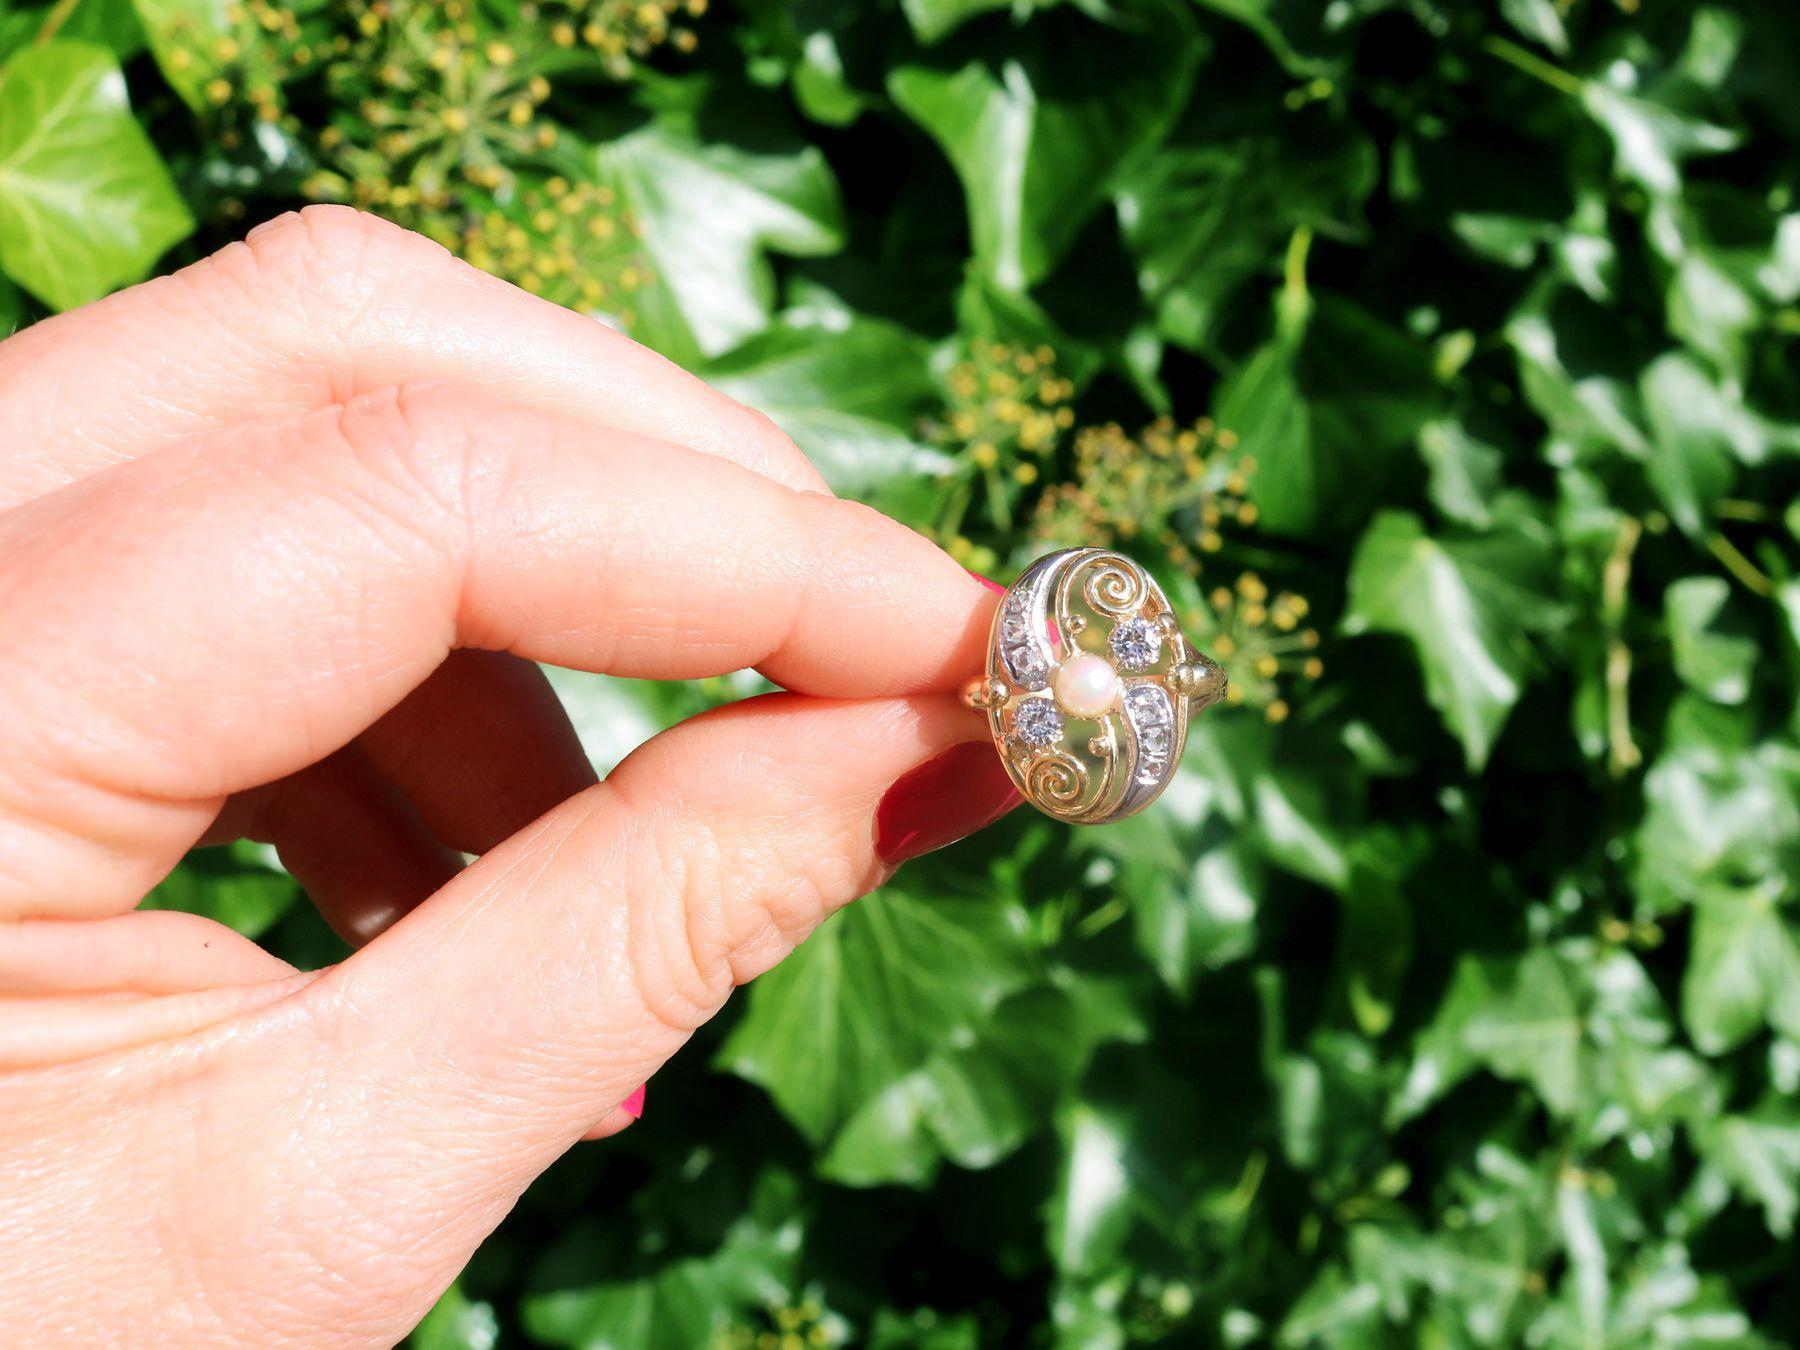 Ein beeindruckender Vintage-Ring mit 0,27 Karat Diamanten und Perlen, 14 Karat Gelbgold und 14 Karat Weißgold; Teil unserer vielfältigen Perlenschmuck-Kollektionen.

Dieser feine und beeindruckende Perlen- und Diamantring ist aus 14-karätigem